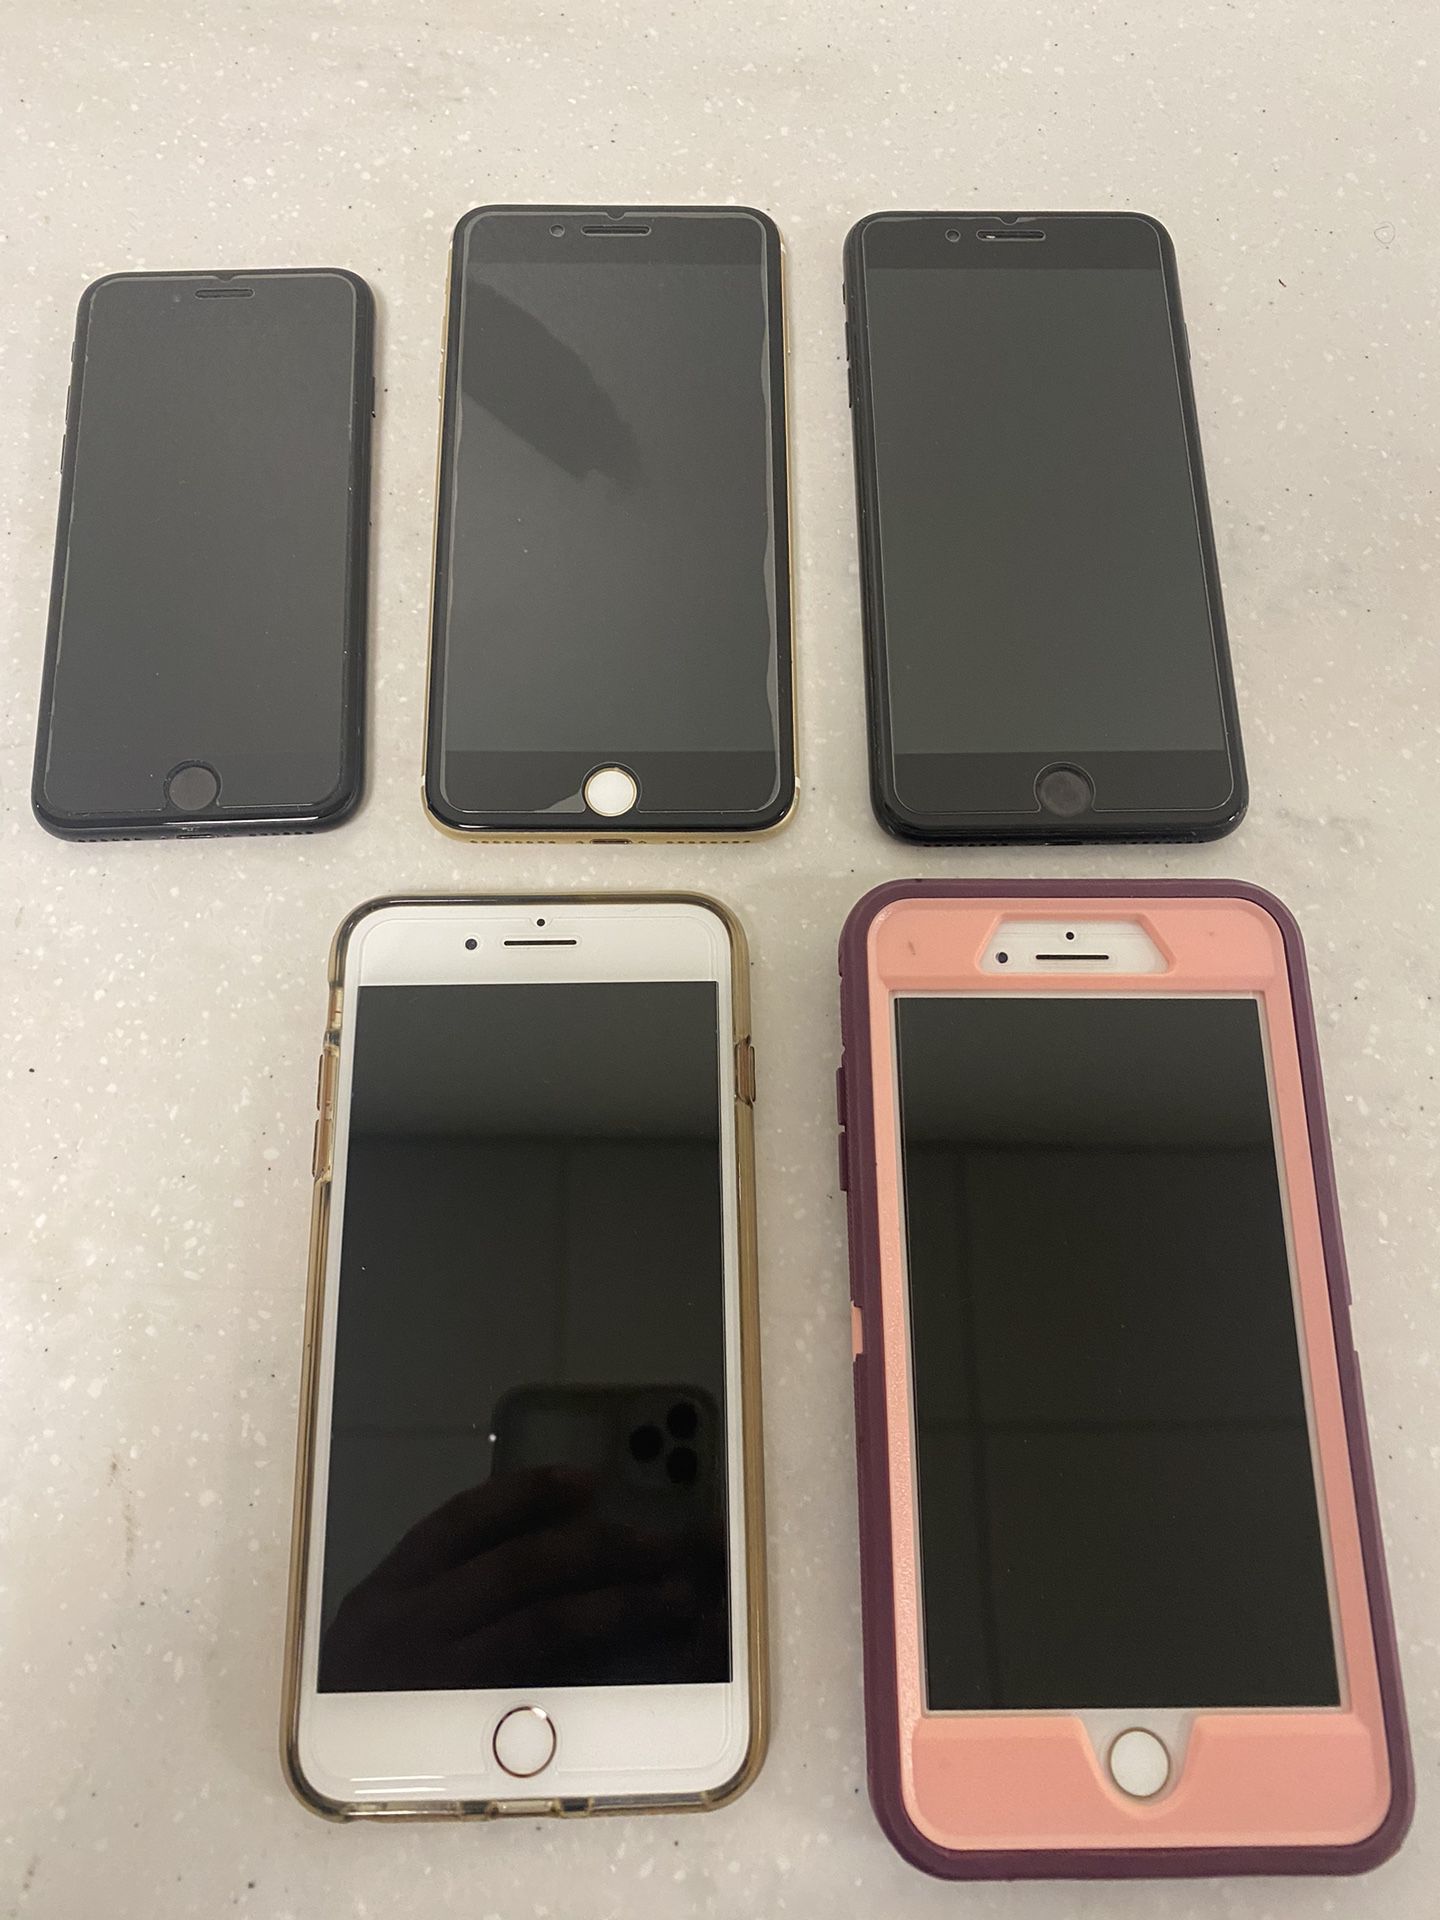 iPhones 7 Plus,8 Plus And 7